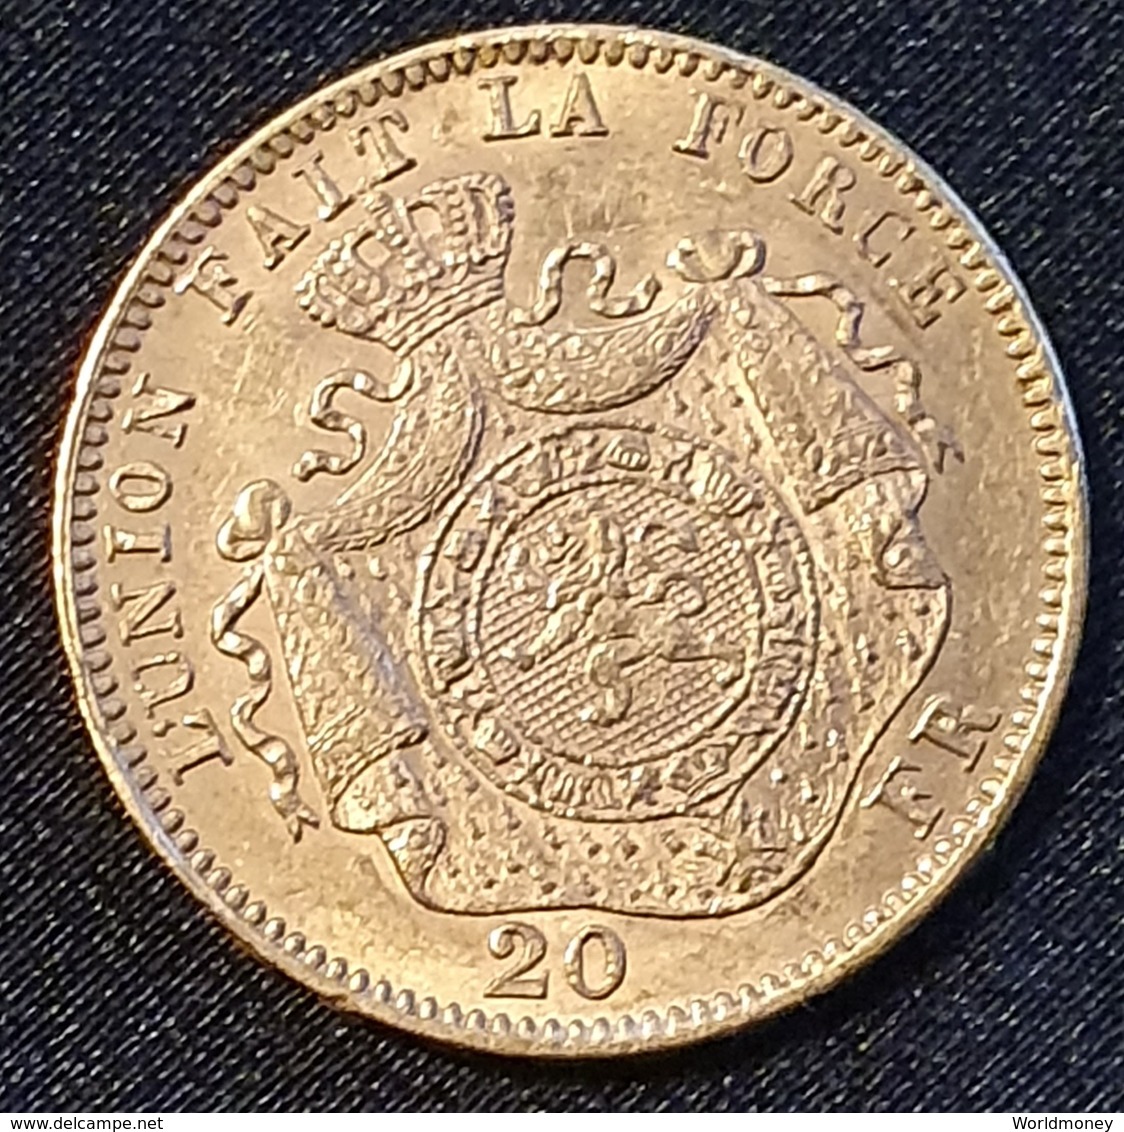 Belgium 20 Francs 1874 (Gold) - 20 Francs (or)